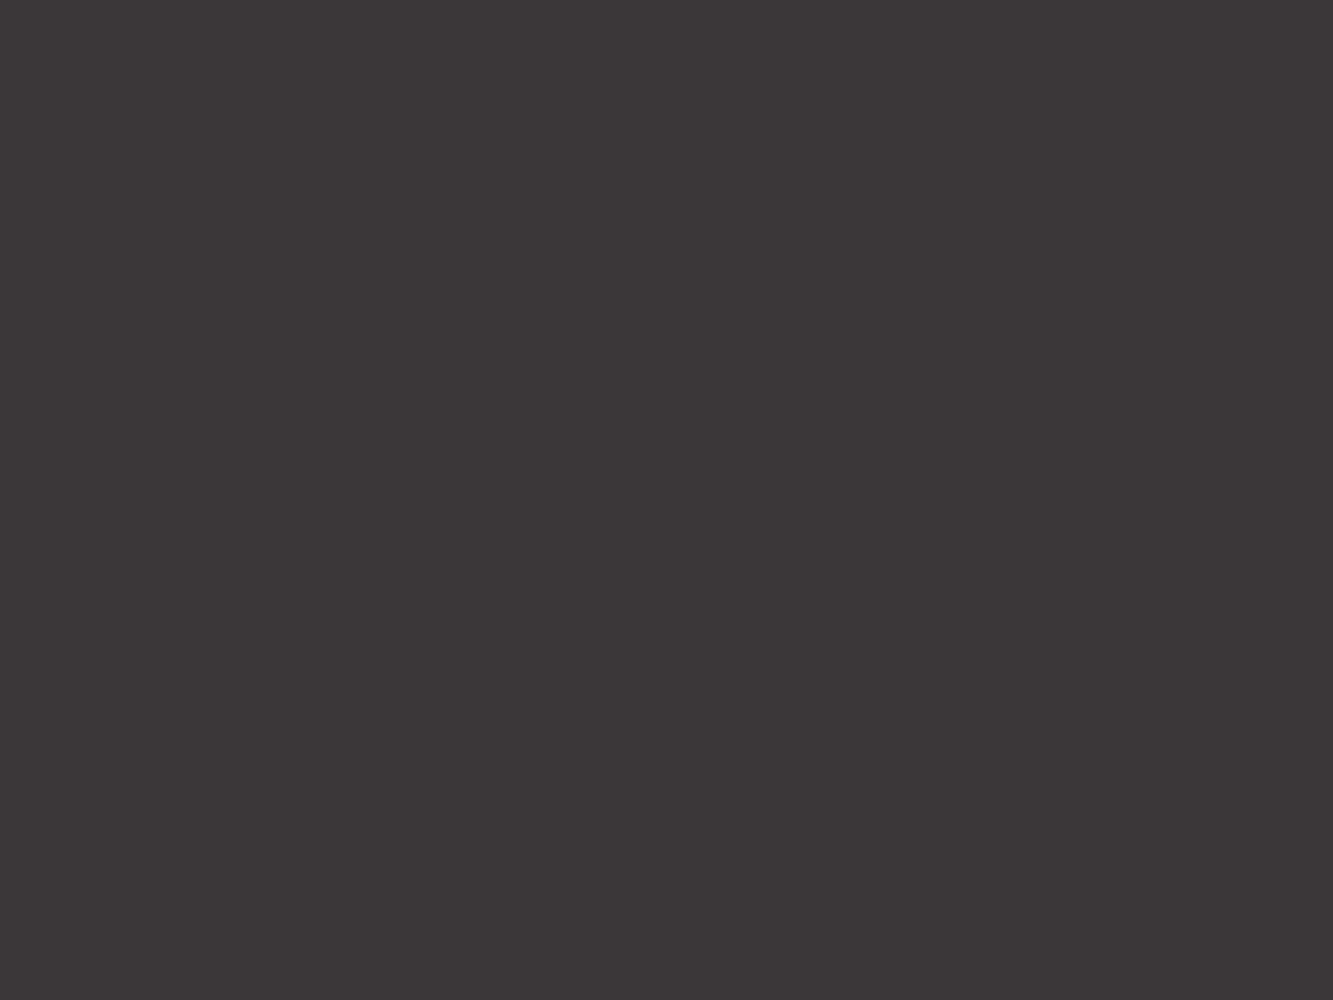 Певица Алла Пугачева с супругом Максимом Галкиным. 2019 год. Фотография: Станислав Красильников / ТАСС